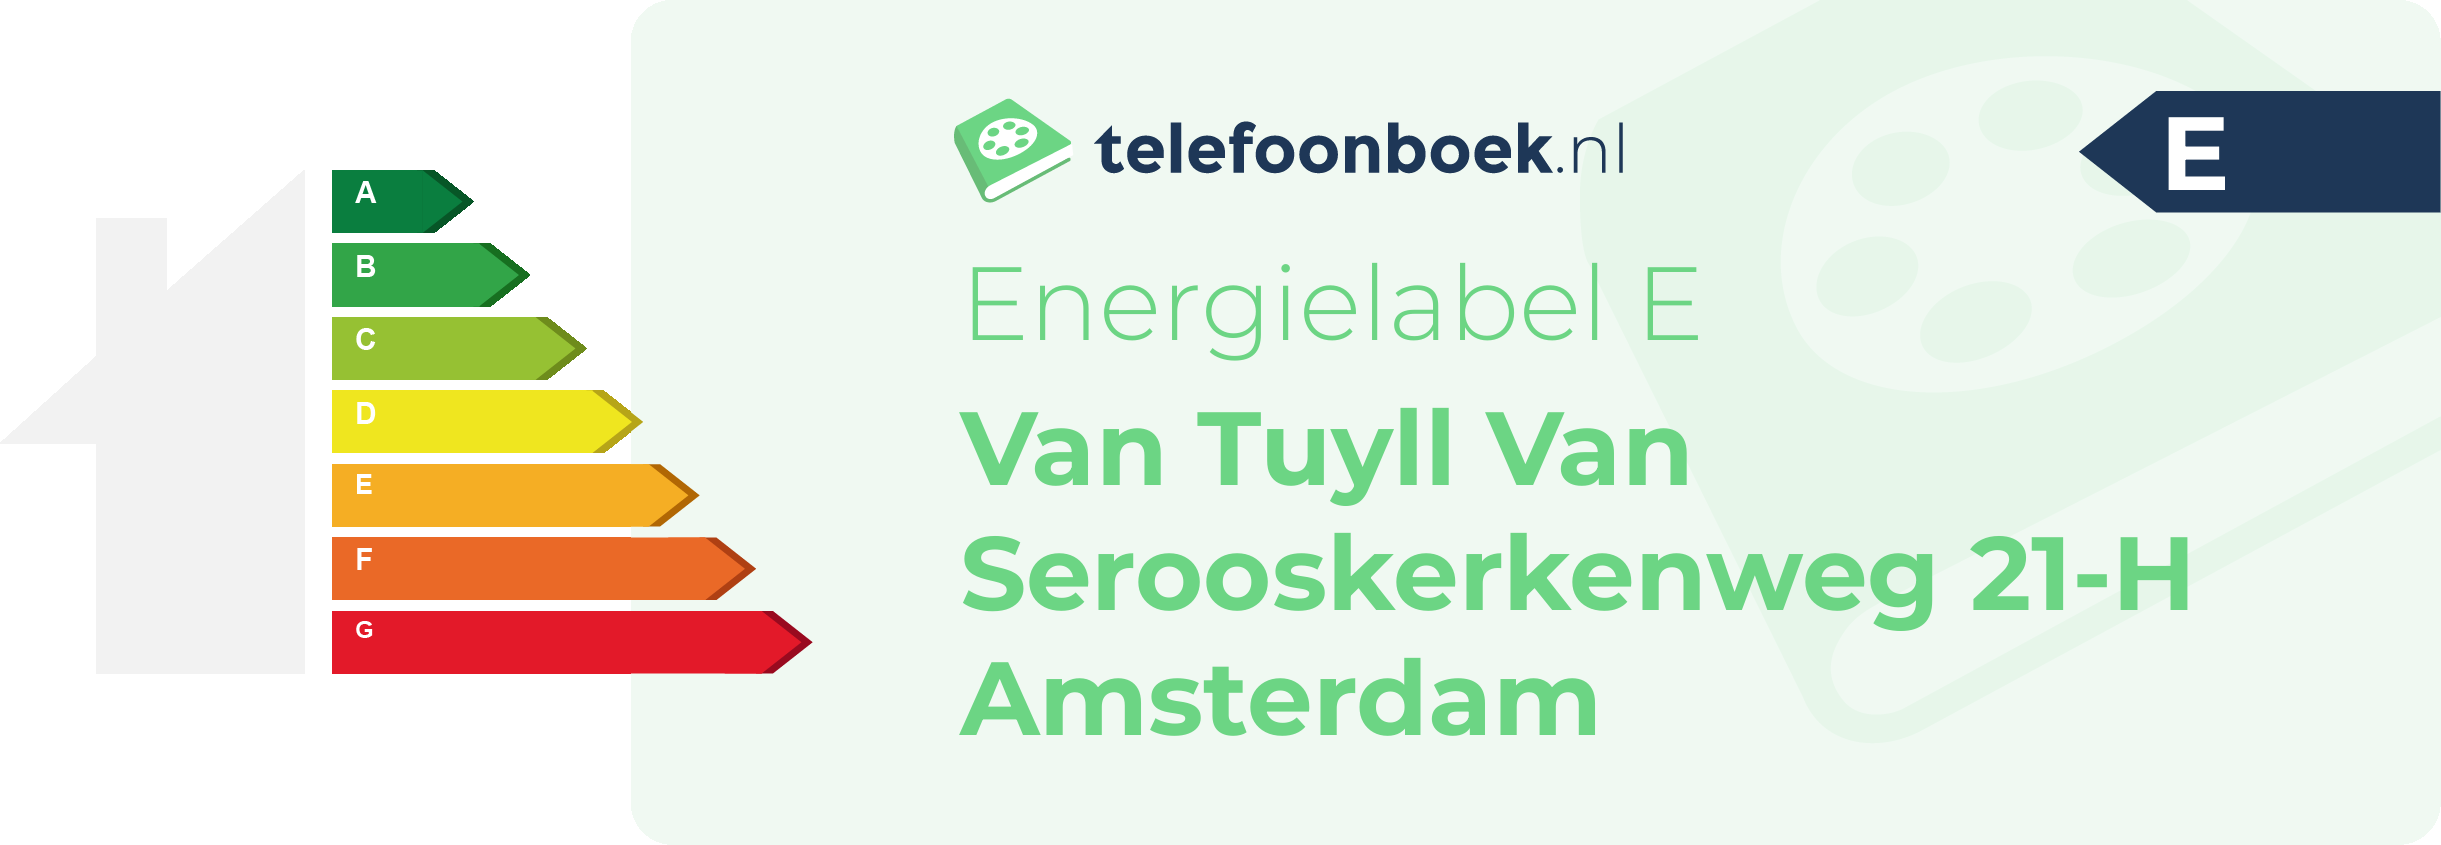 Energielabel Van Tuyll Van Serooskerkenweg 21-H Amsterdam